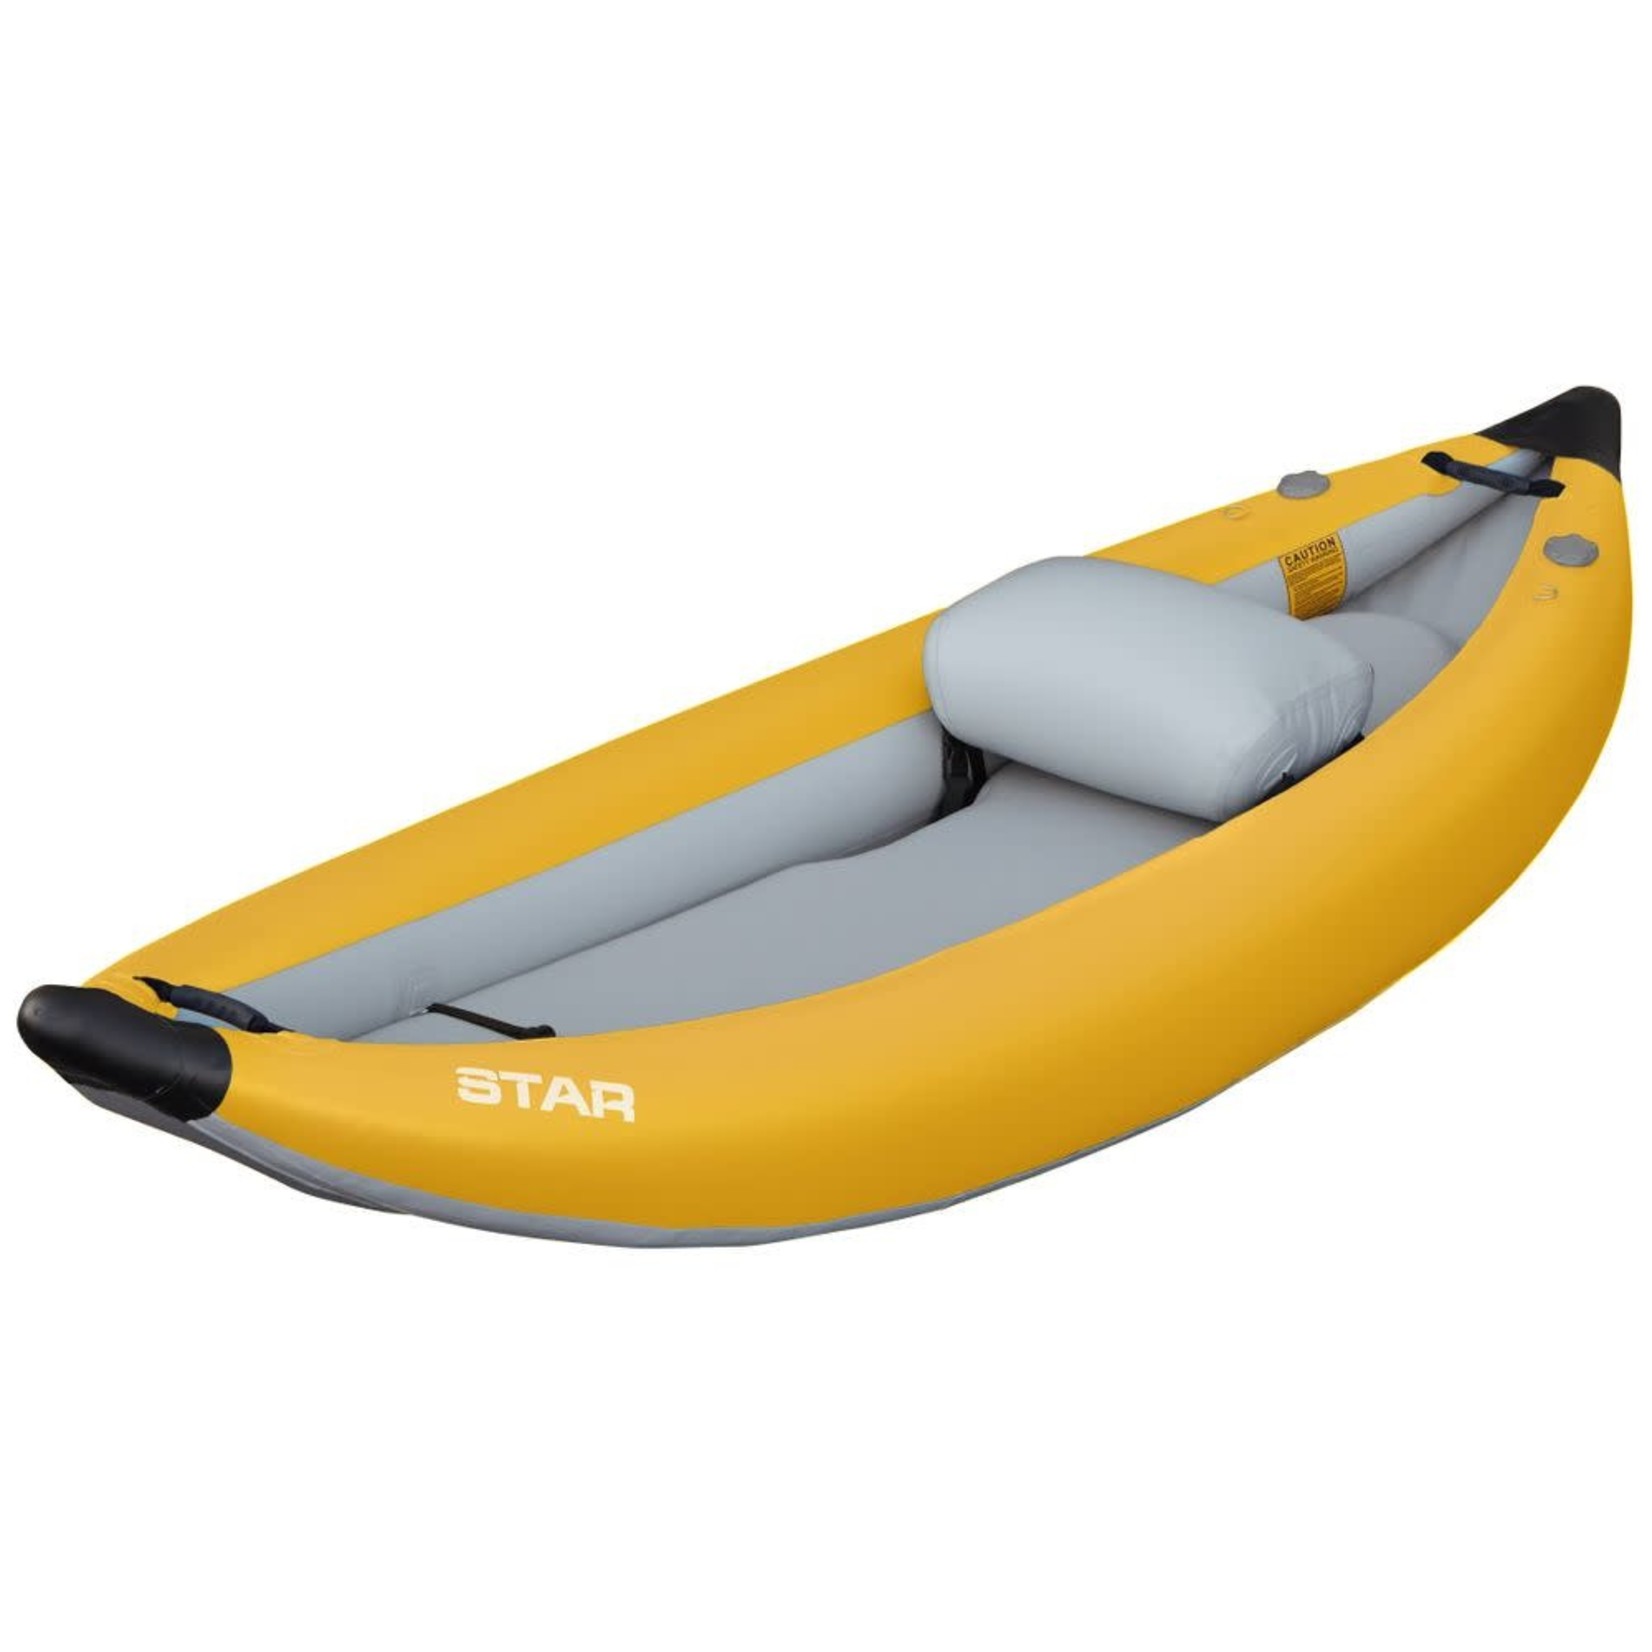 STAR STAR Outlaw I Inflatable Kayak